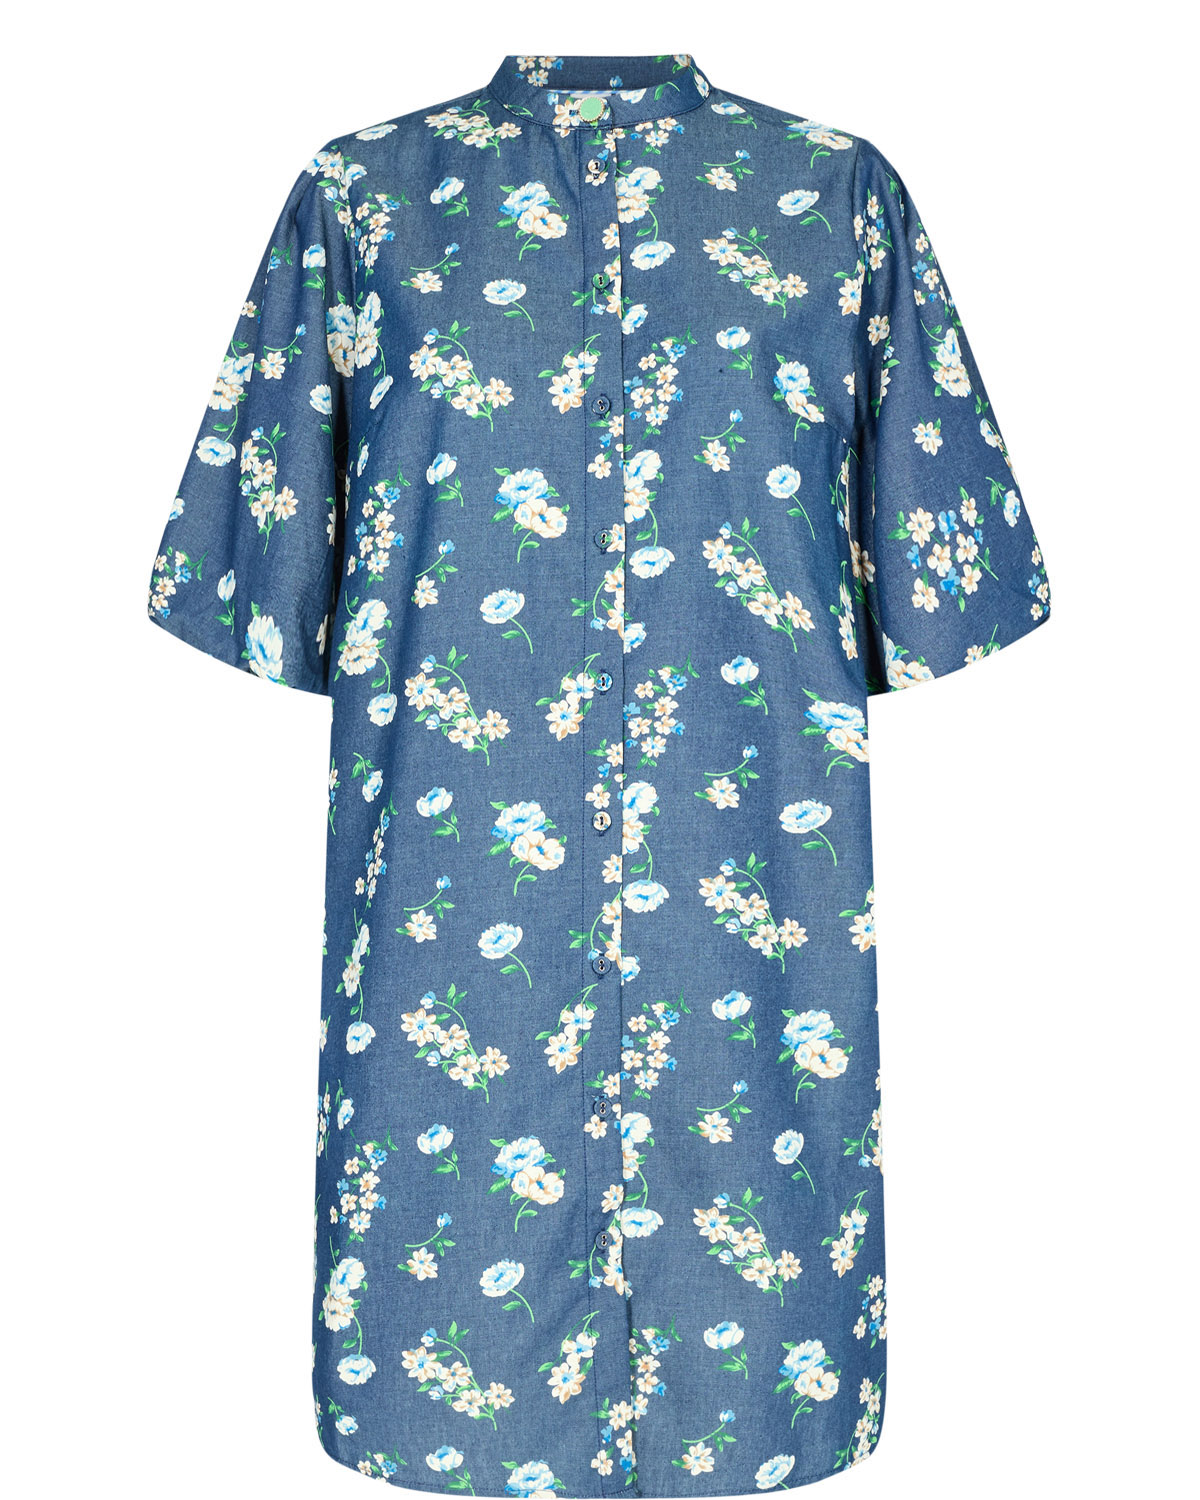 Nümph Edelle Dress, blå mønstret demin kjole